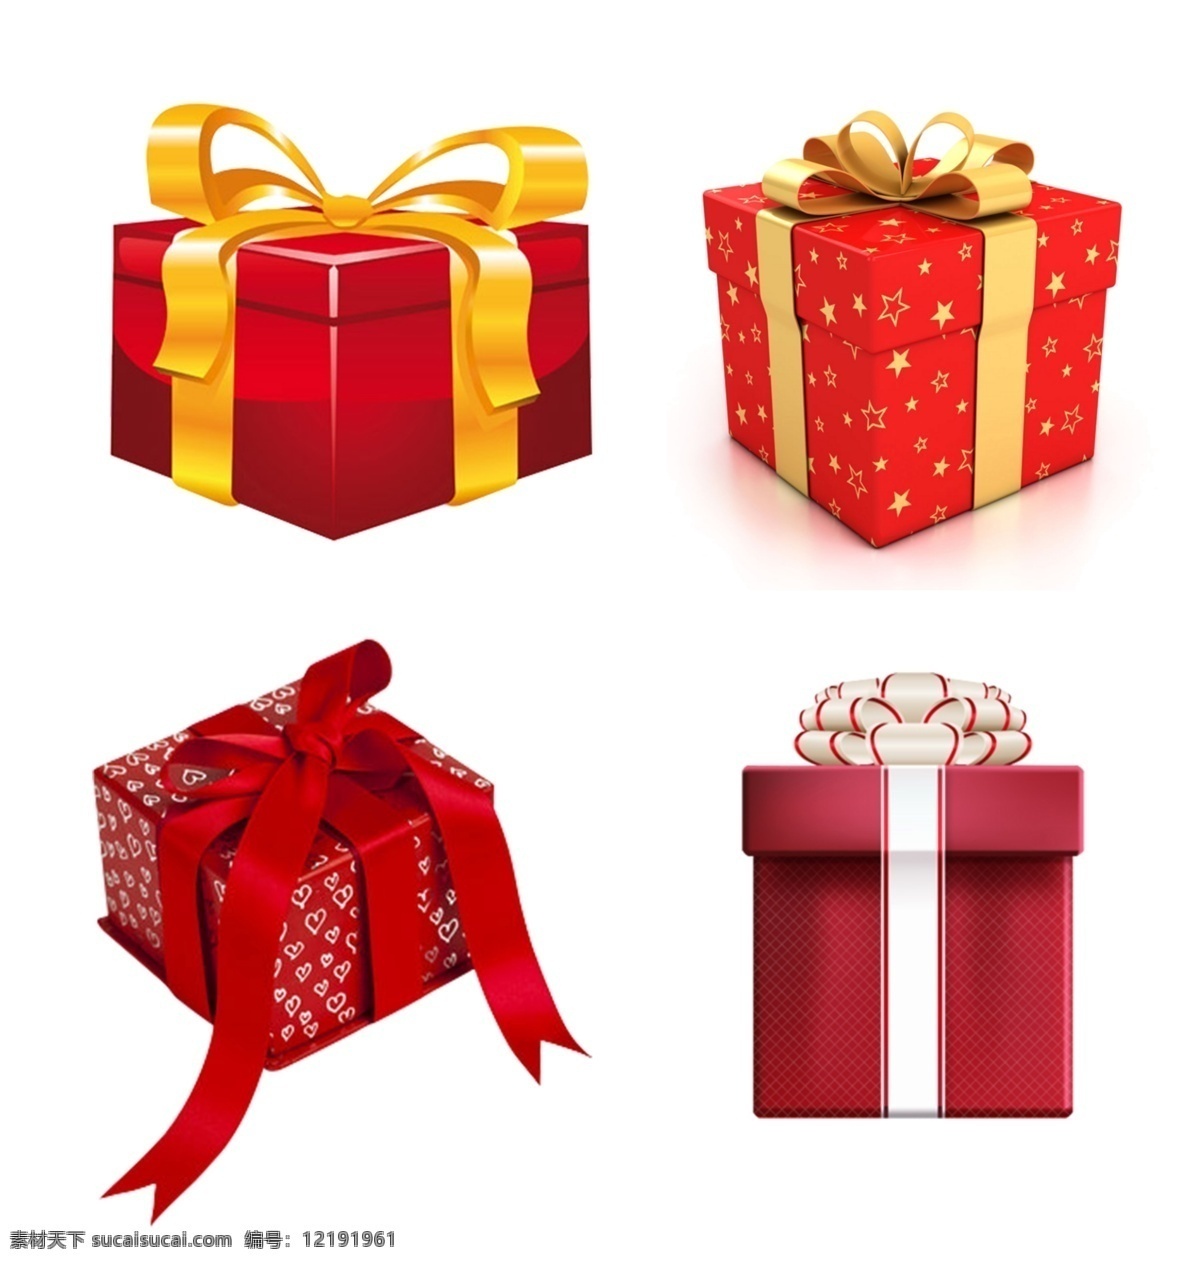 礼物盒图片 礼品 礼物盒 礼物 礼盒 纹理 展板模板